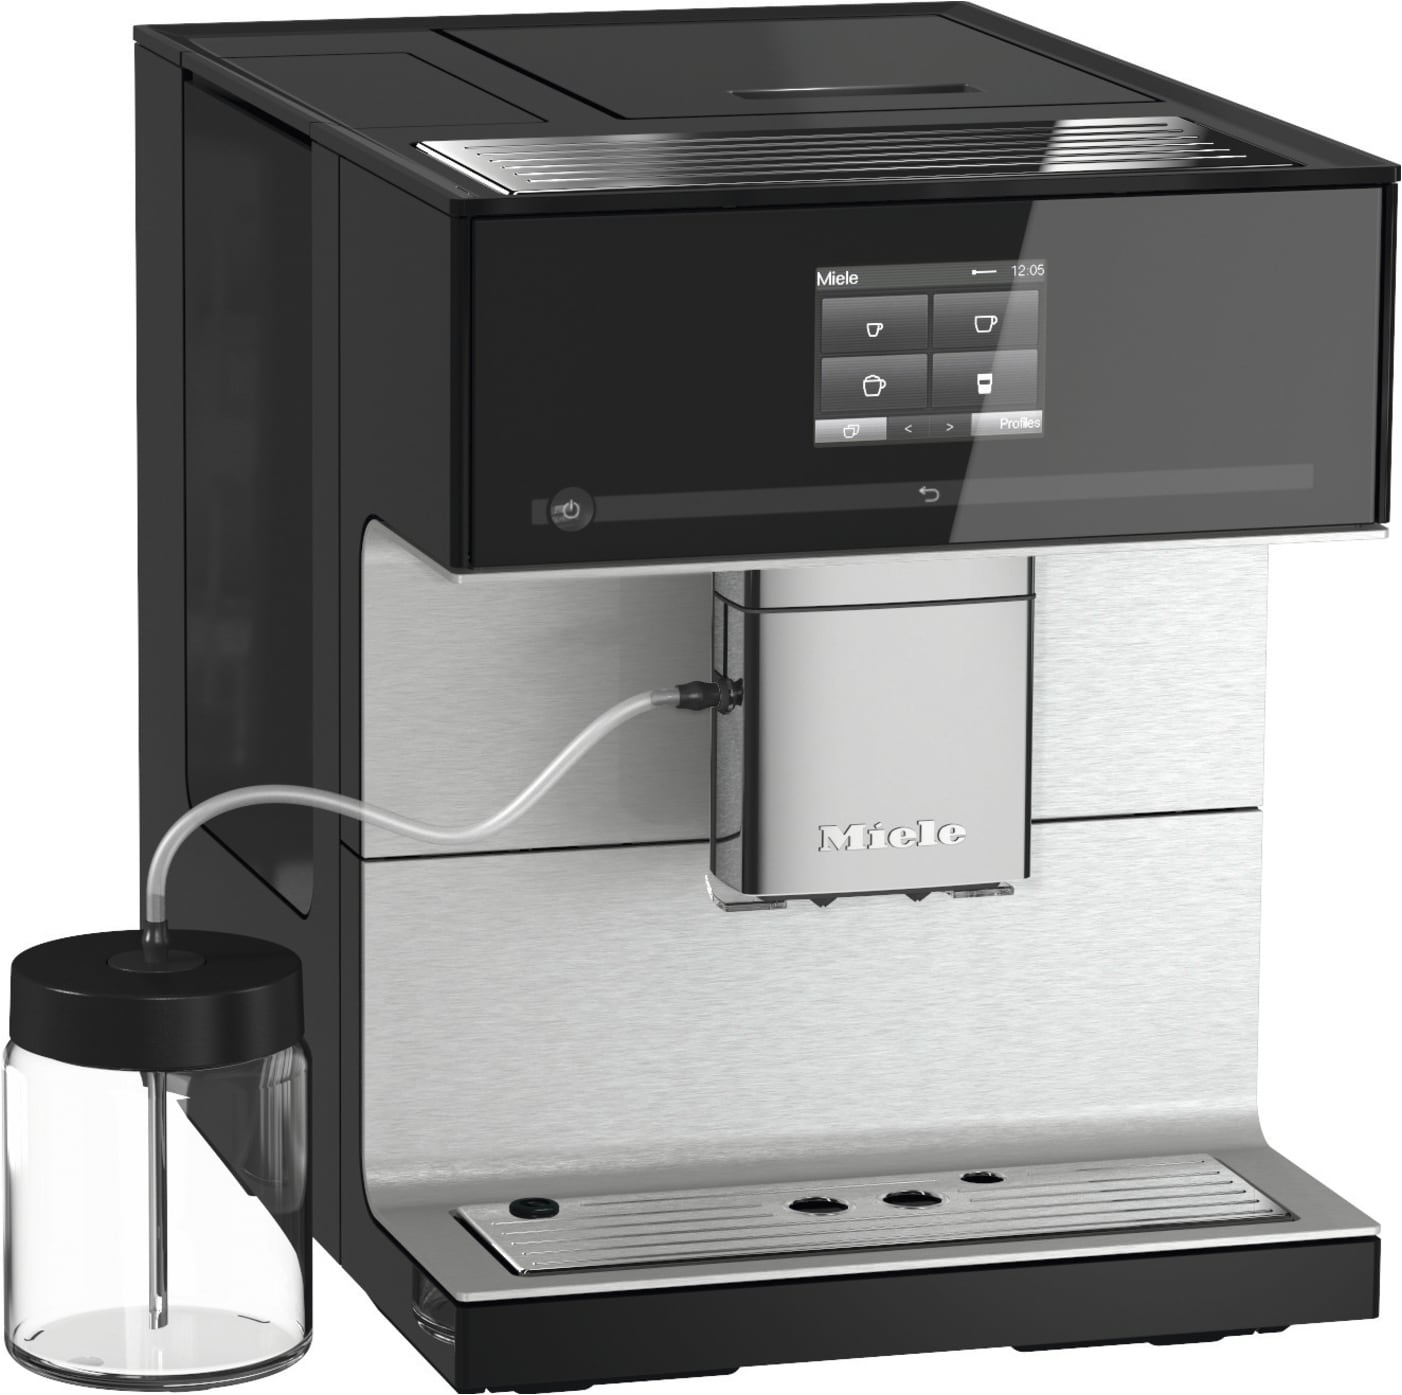 Ret Ombord møde Miele espressomaskine CM7350BK (sort) | Elgiganten